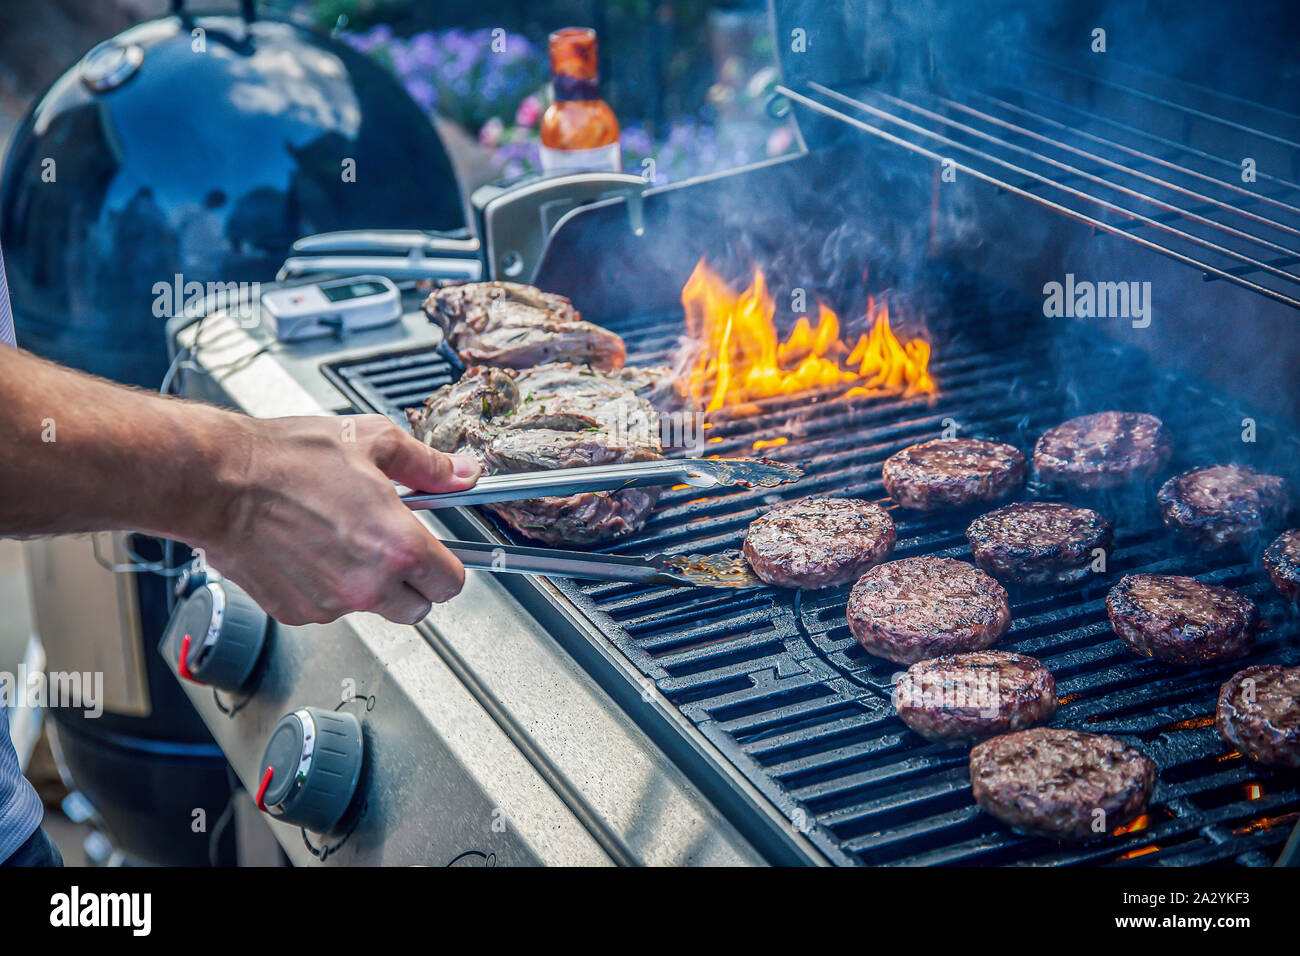 Hamburguesas de carne y corderos marinados cocinando en una barbacoa al aire libre Foto de stock